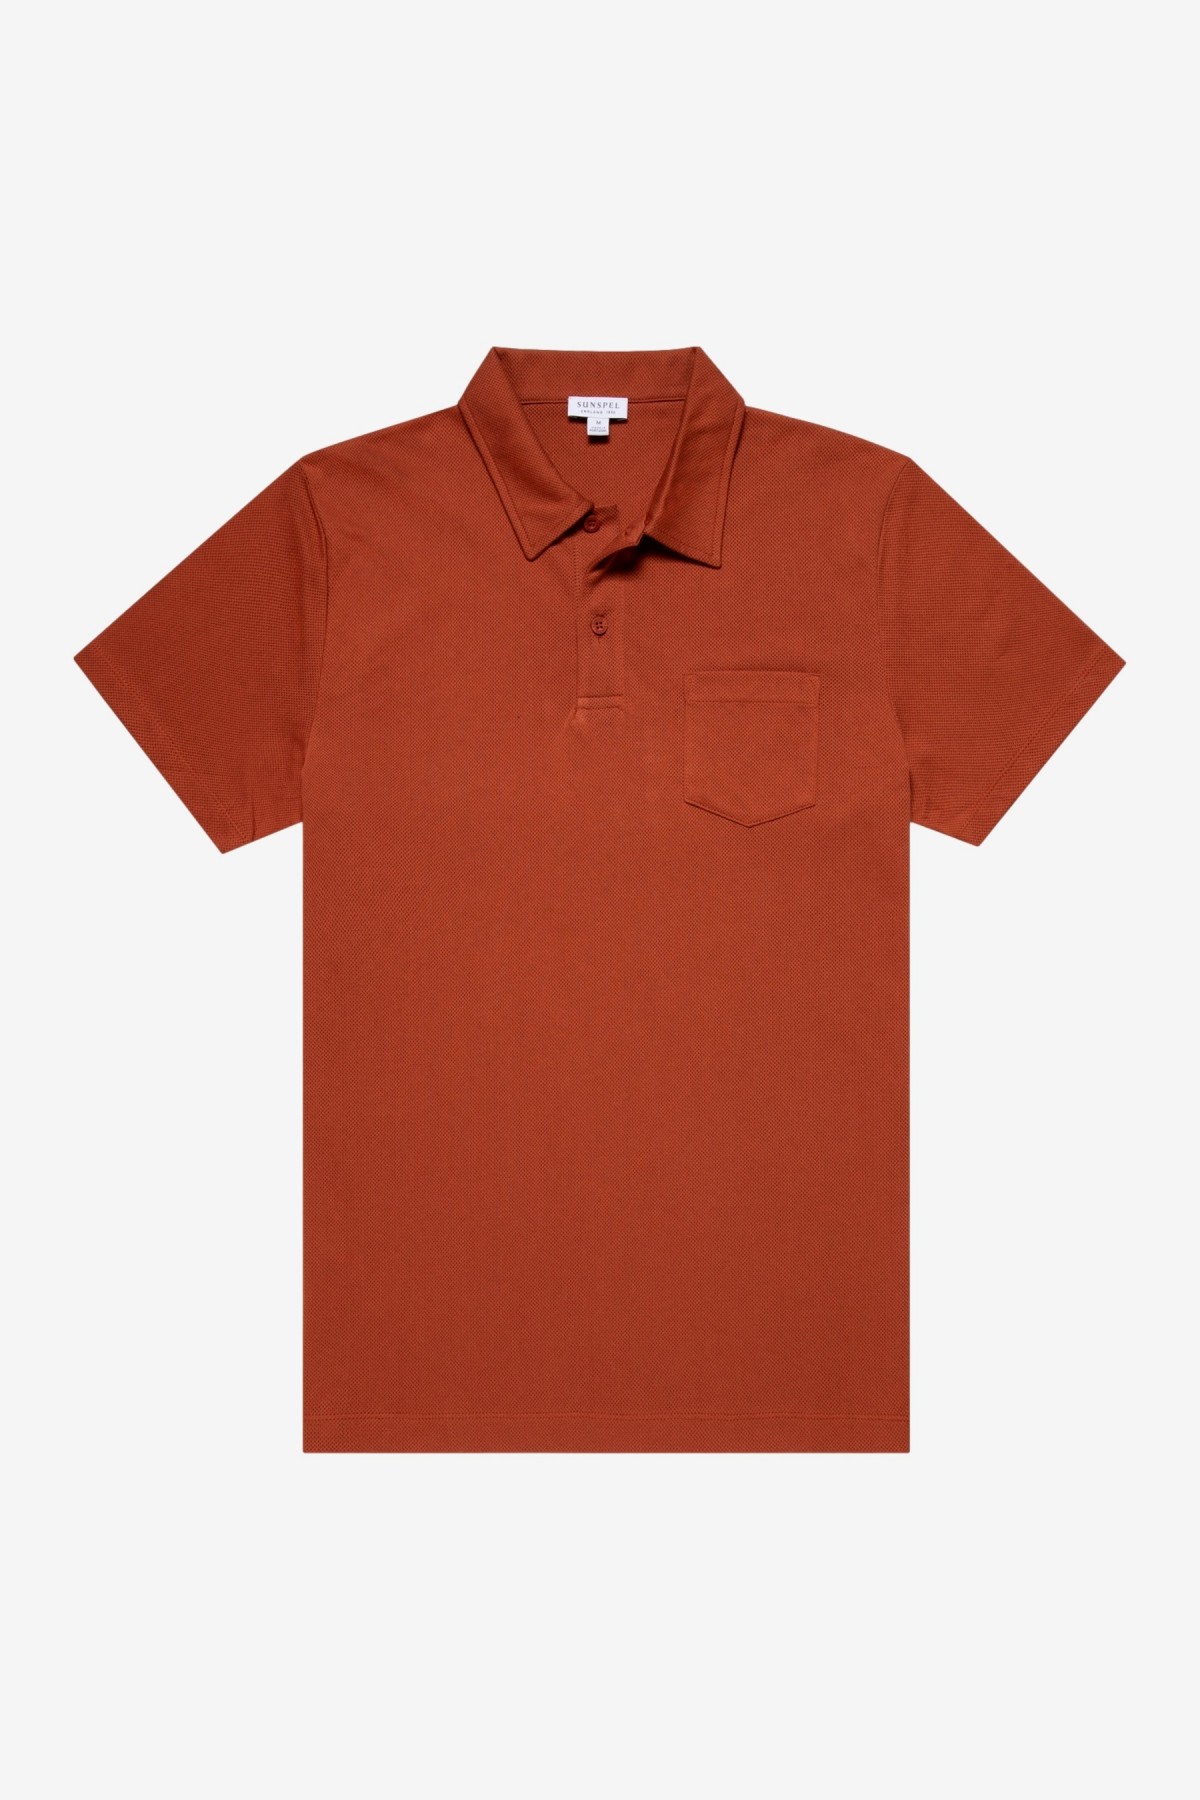 Sunspel Riviera Polo Shirt in Chestnut